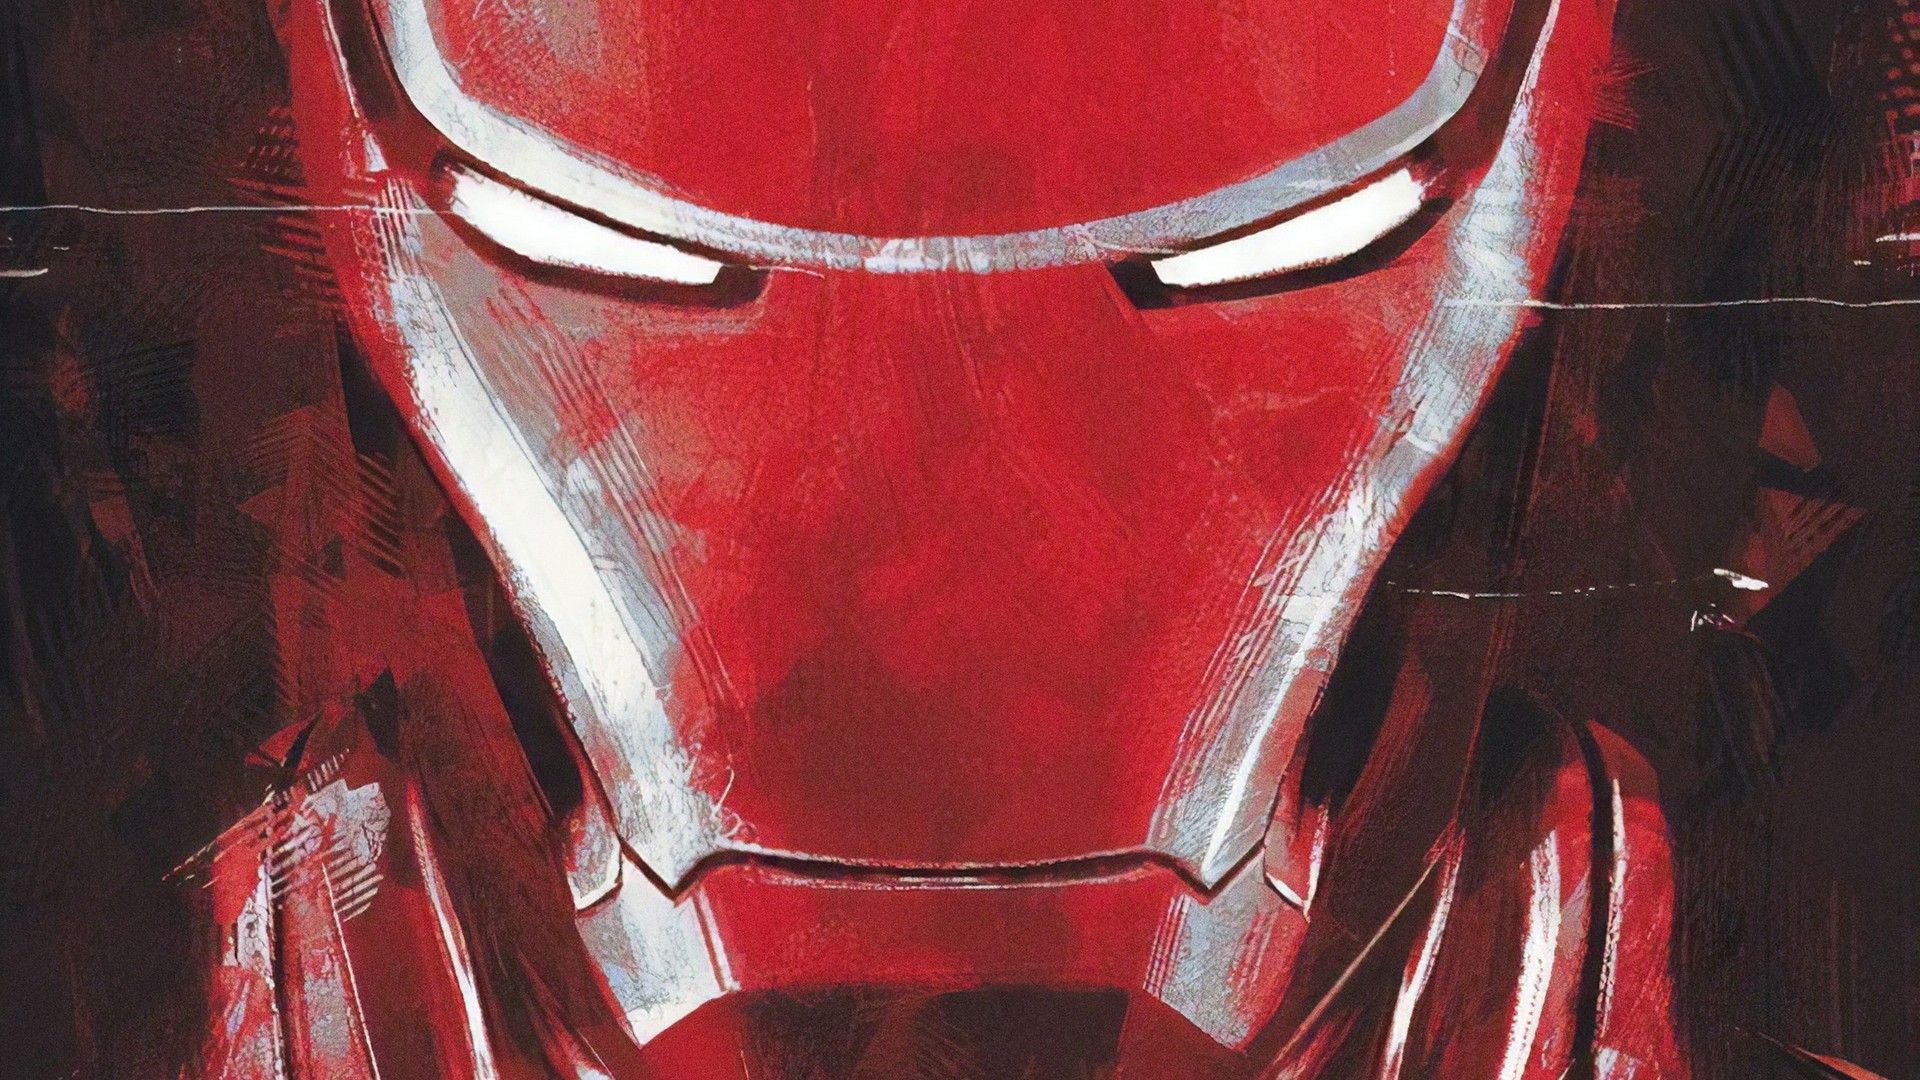 Avengers Endgame 2019 Wallpaper For Desktop Movie Poster